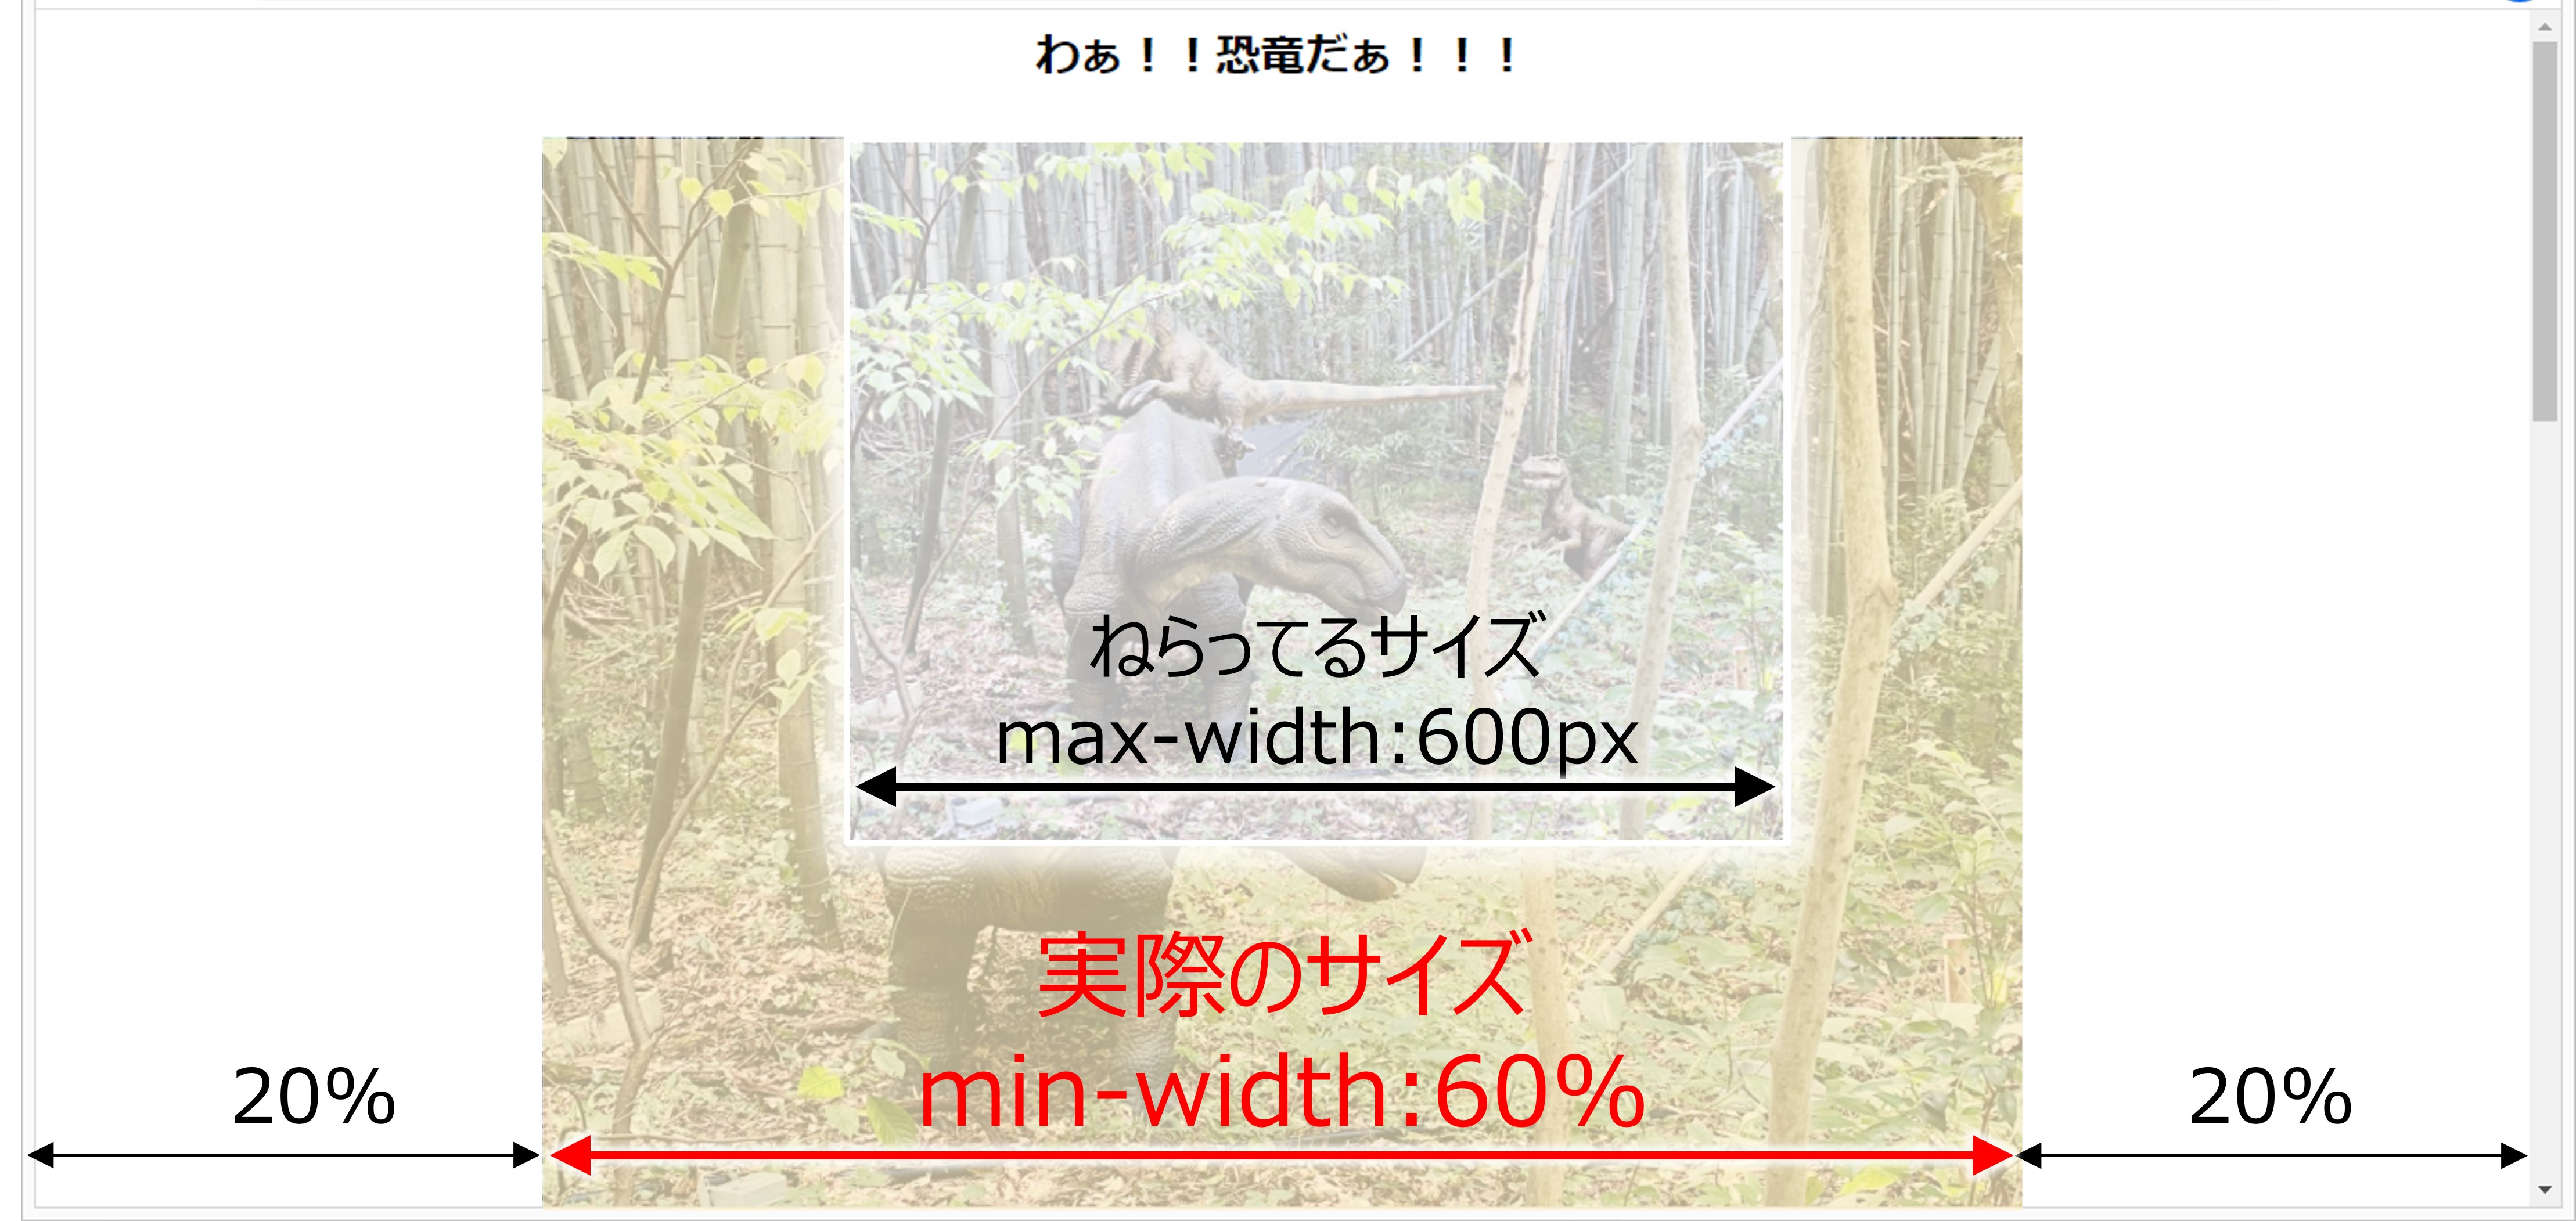 max-widthとwidthの関係